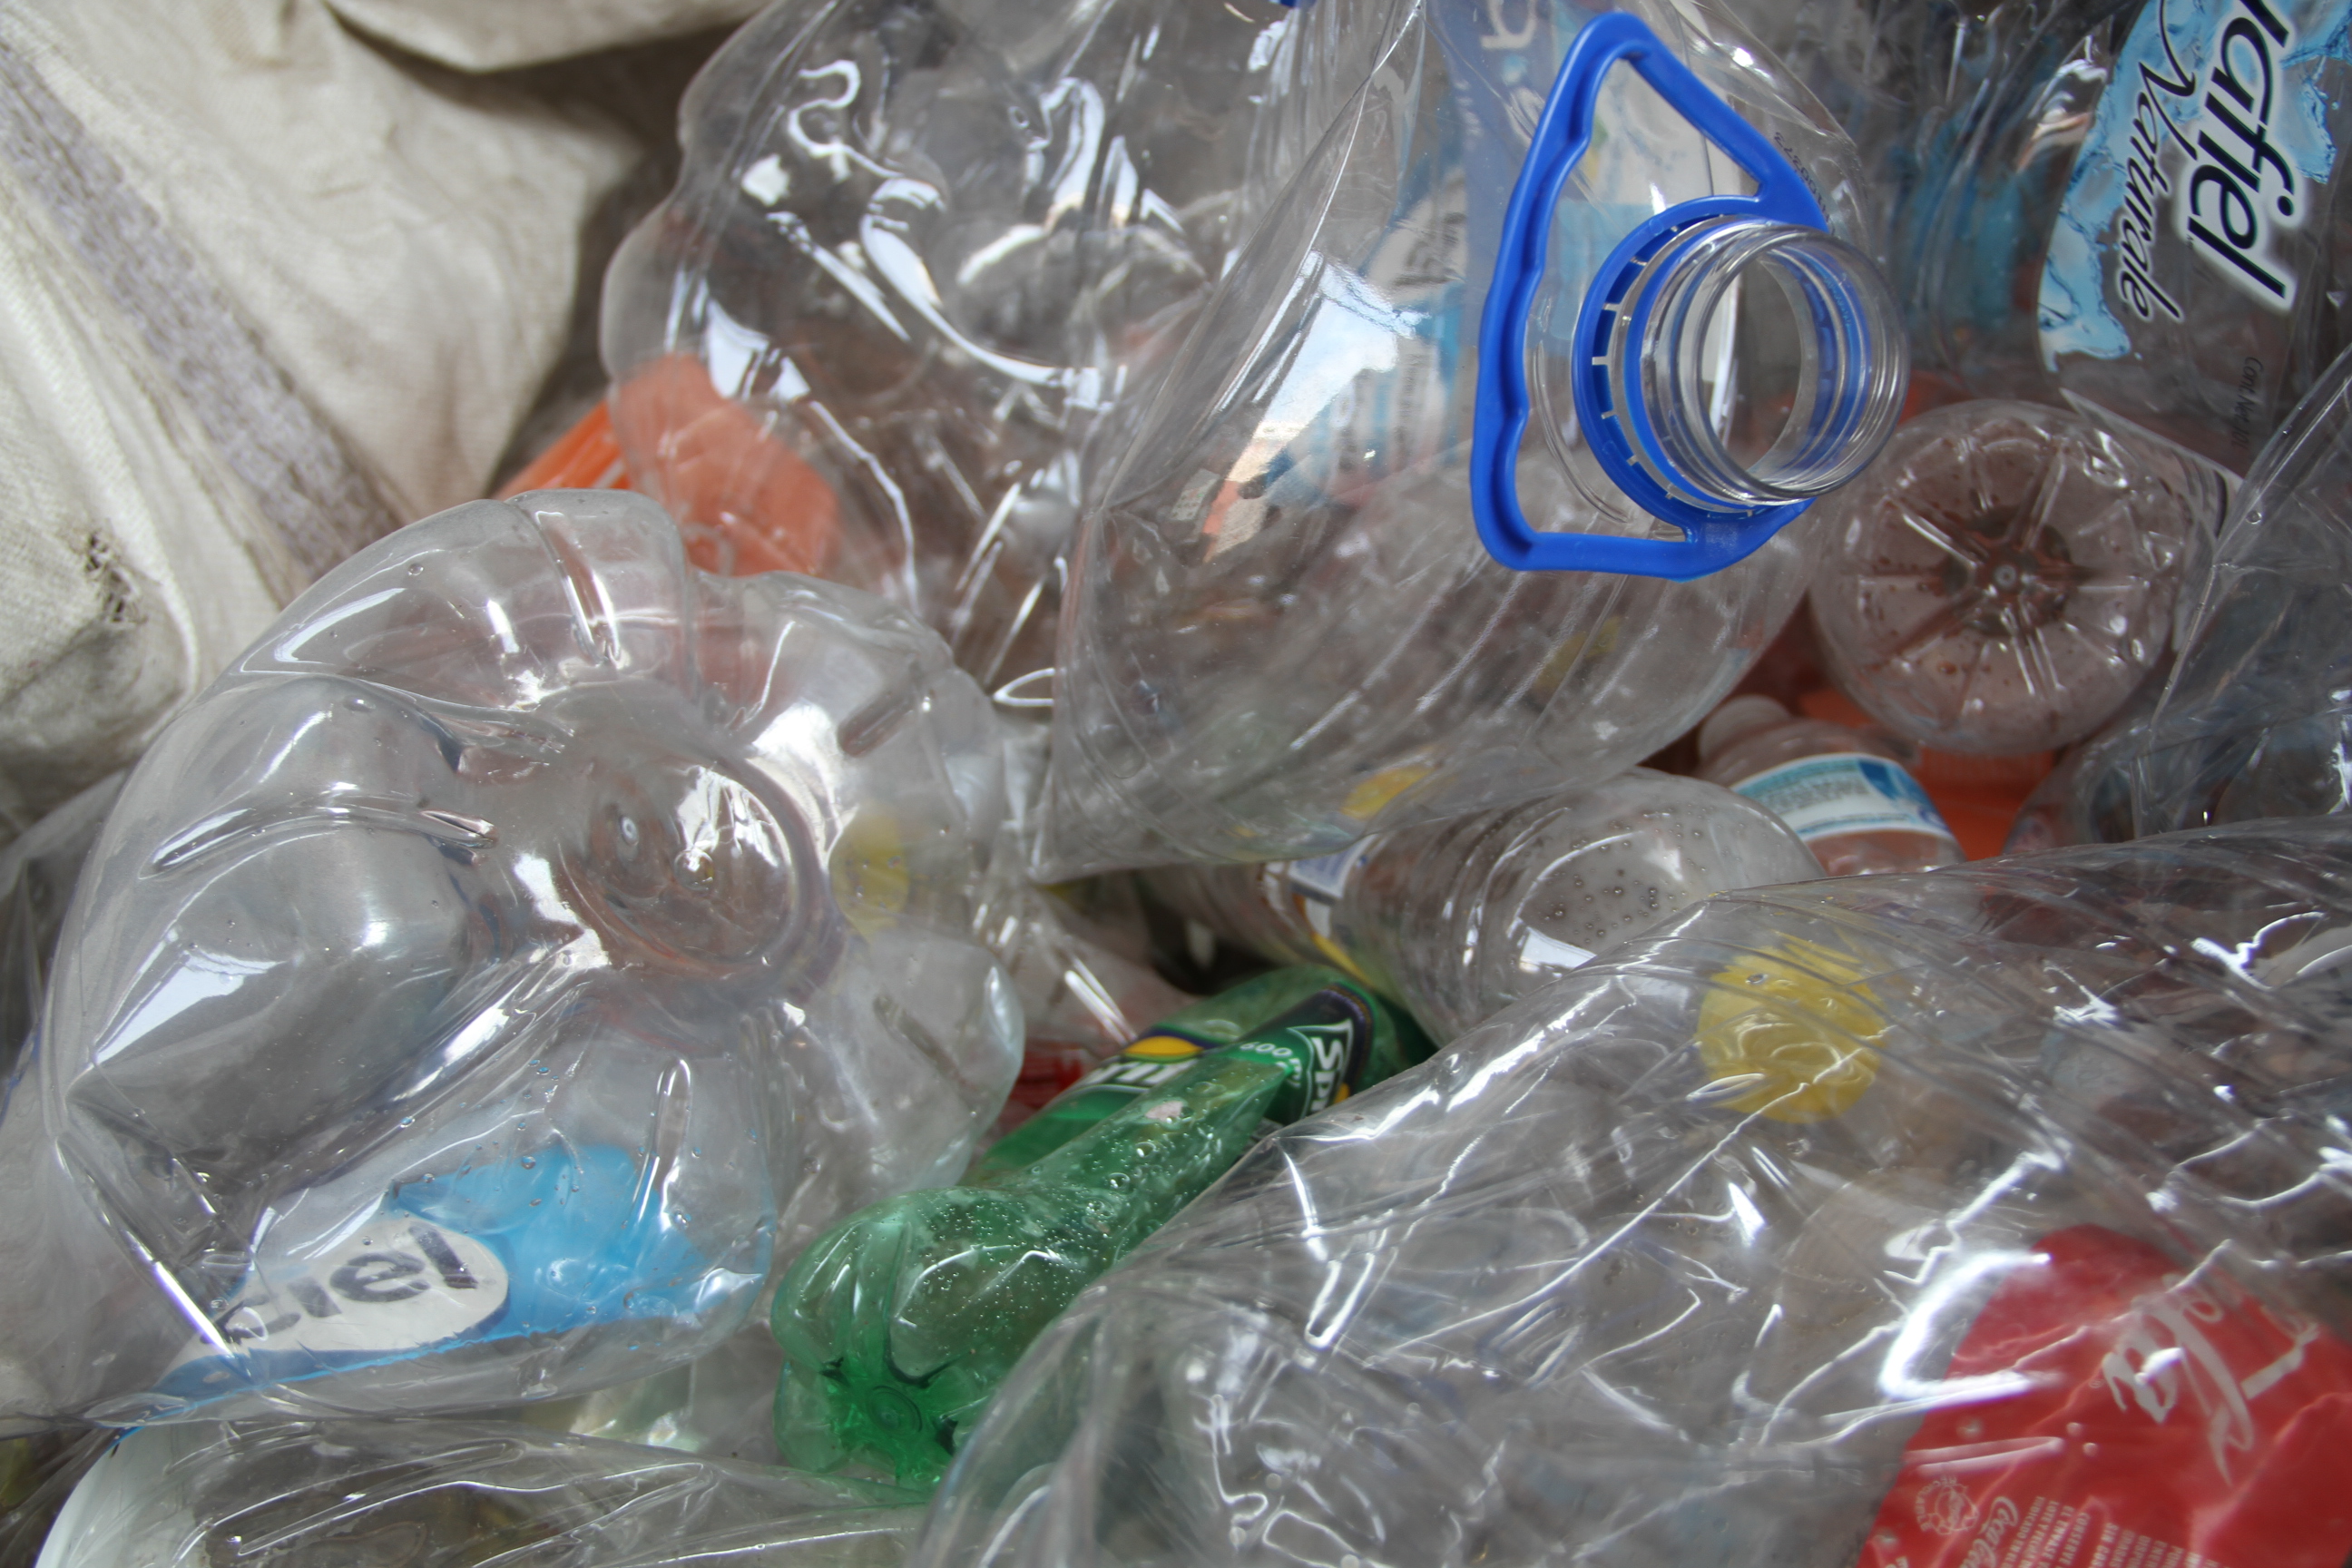 Vista detallada de envases de plástico